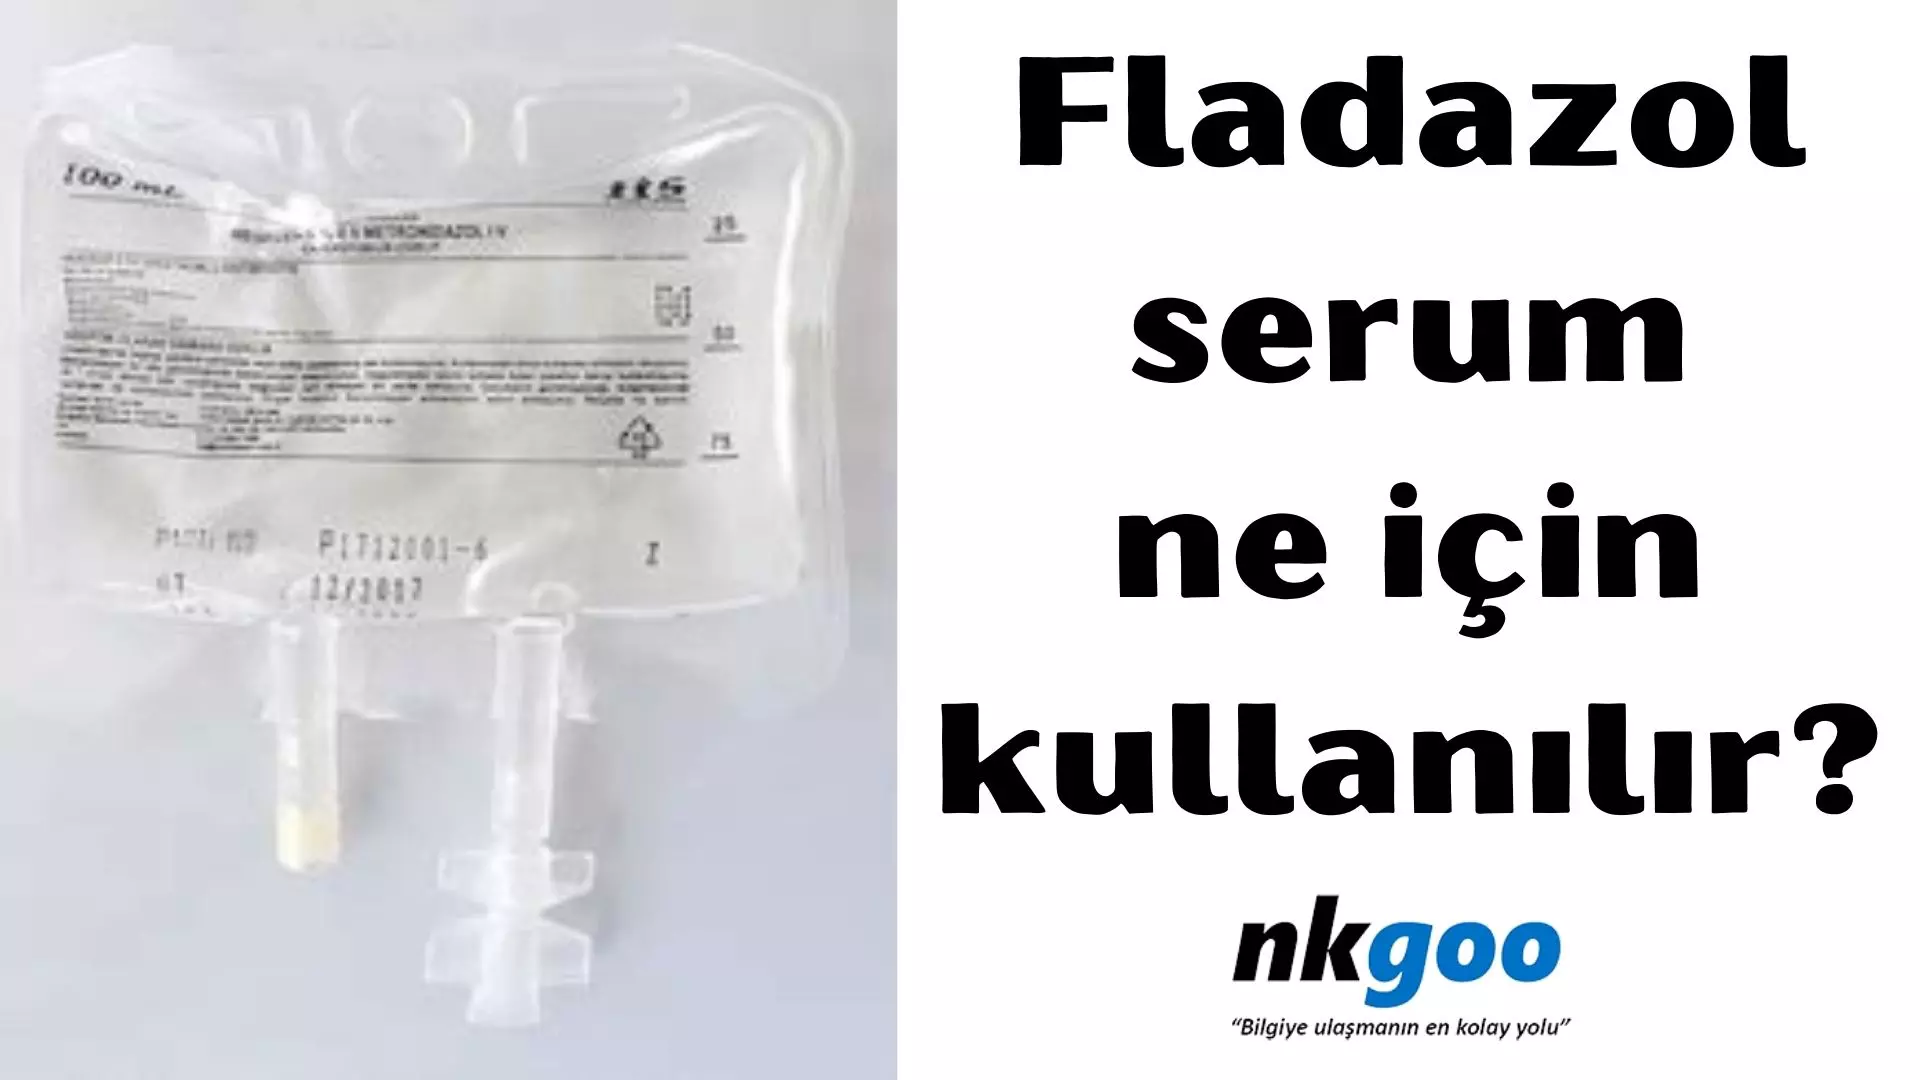 Fladazol serum ne için kullanılır? 0,5 enjeksiyon